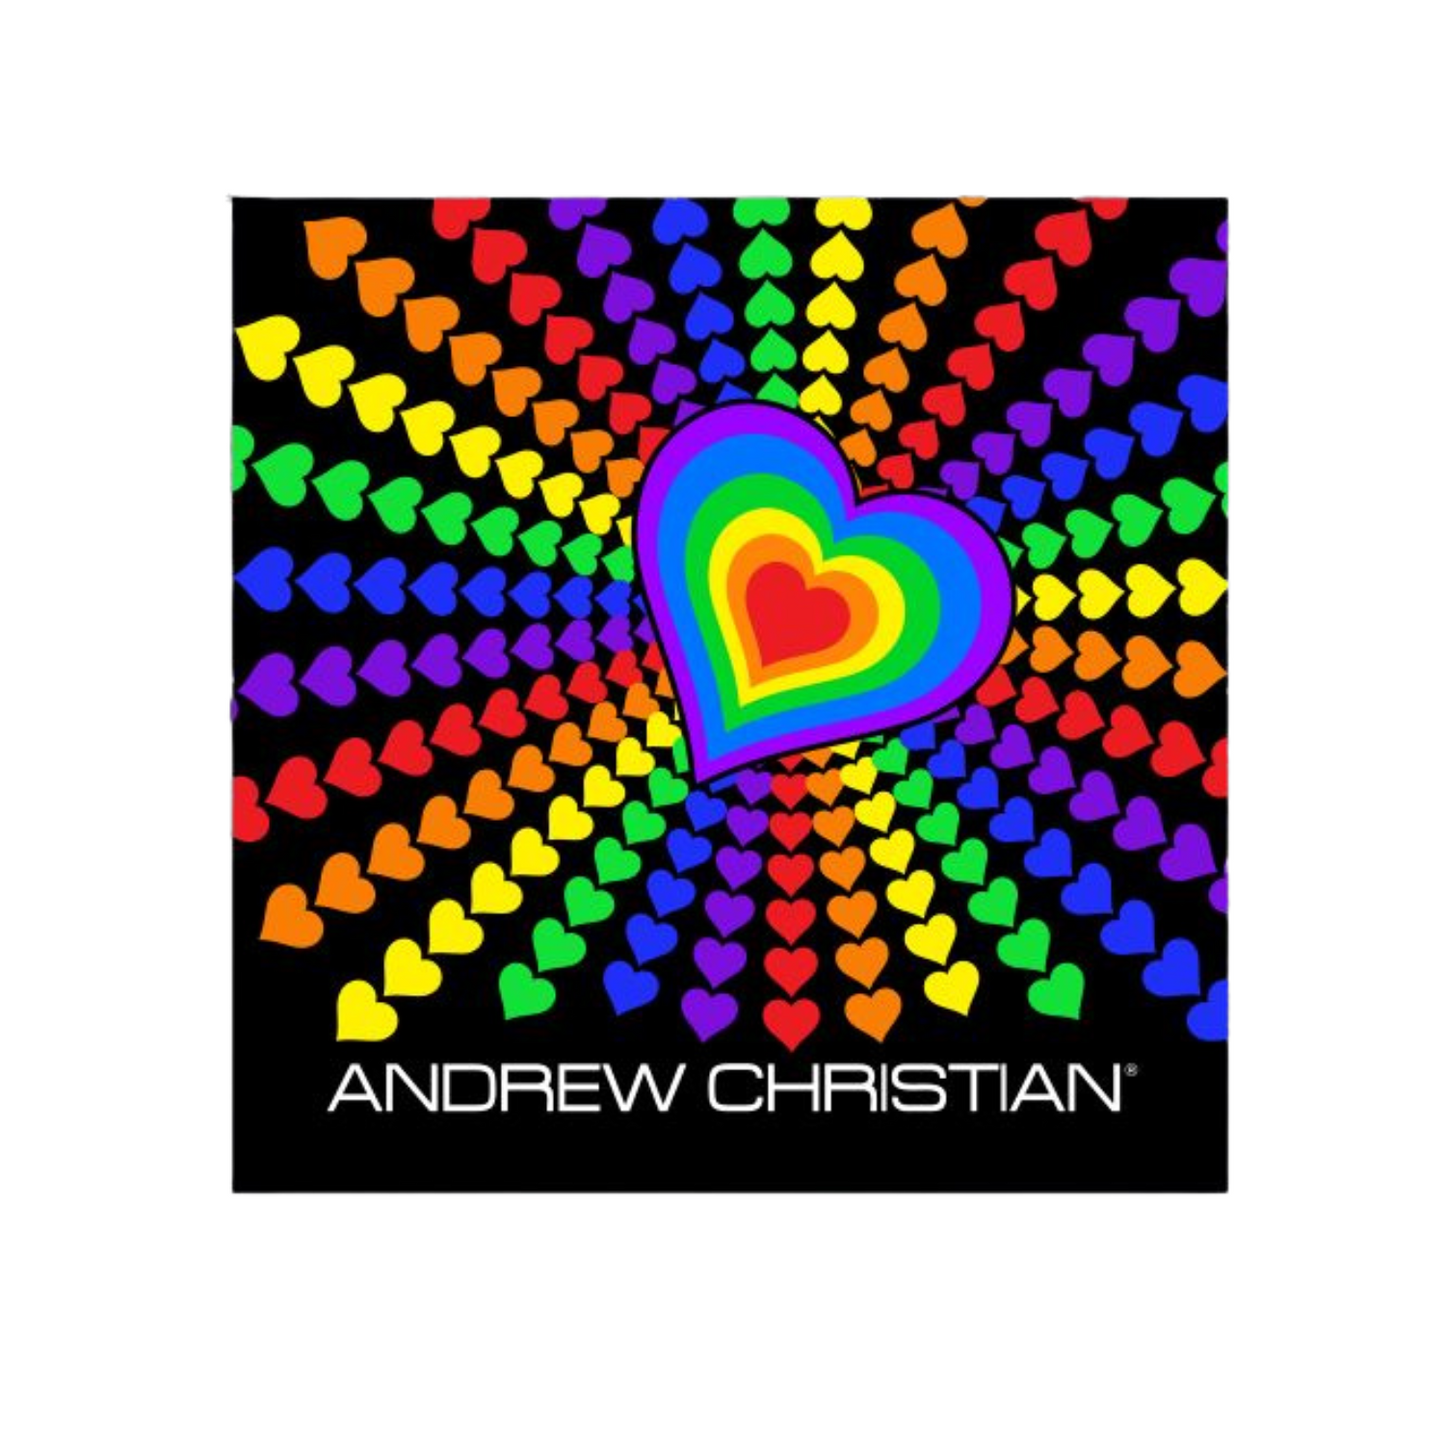 Leuke stickers met gay thema of LGBTQ+ thema, zoals deze leuke stickers ontworpen door Andrew Christian koop je bij Flavourez! Deze "Pride Hart" sticker is erg uniek! Door deze producten te kopen steun je kleine en grote LGBTQ+ of Gay ondernemingen. Ben trots op wie je bent!